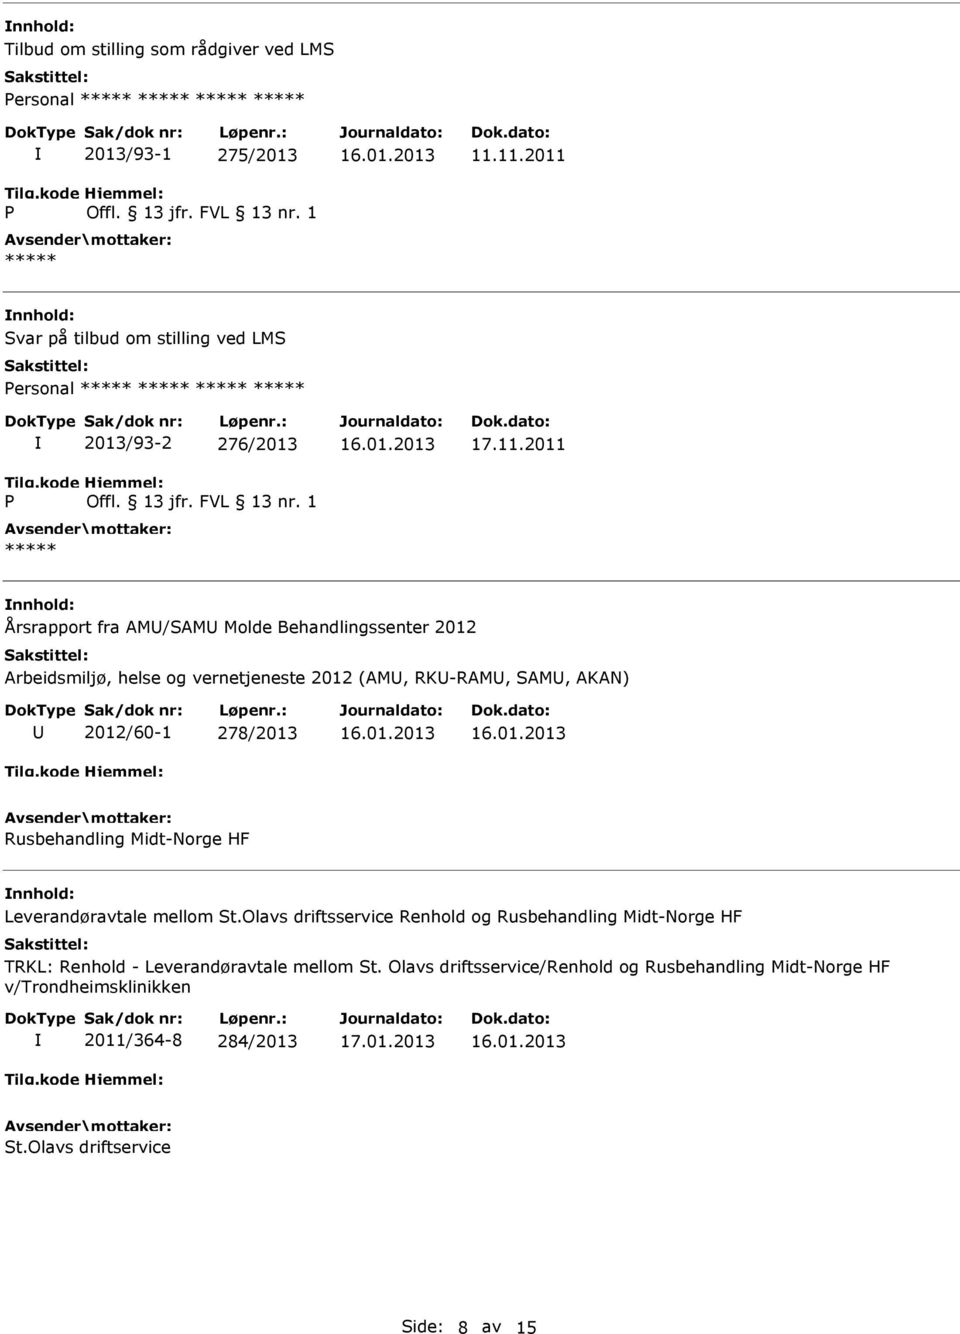 2012 Arbeidsmiljø, helse og vernetjeneste 2012 (AM, RK-RAM, SAM, AKAN) 2012/60-1 278/2013 Rusbehandling Midt-Norge HF Leverandøravtale mellom St.